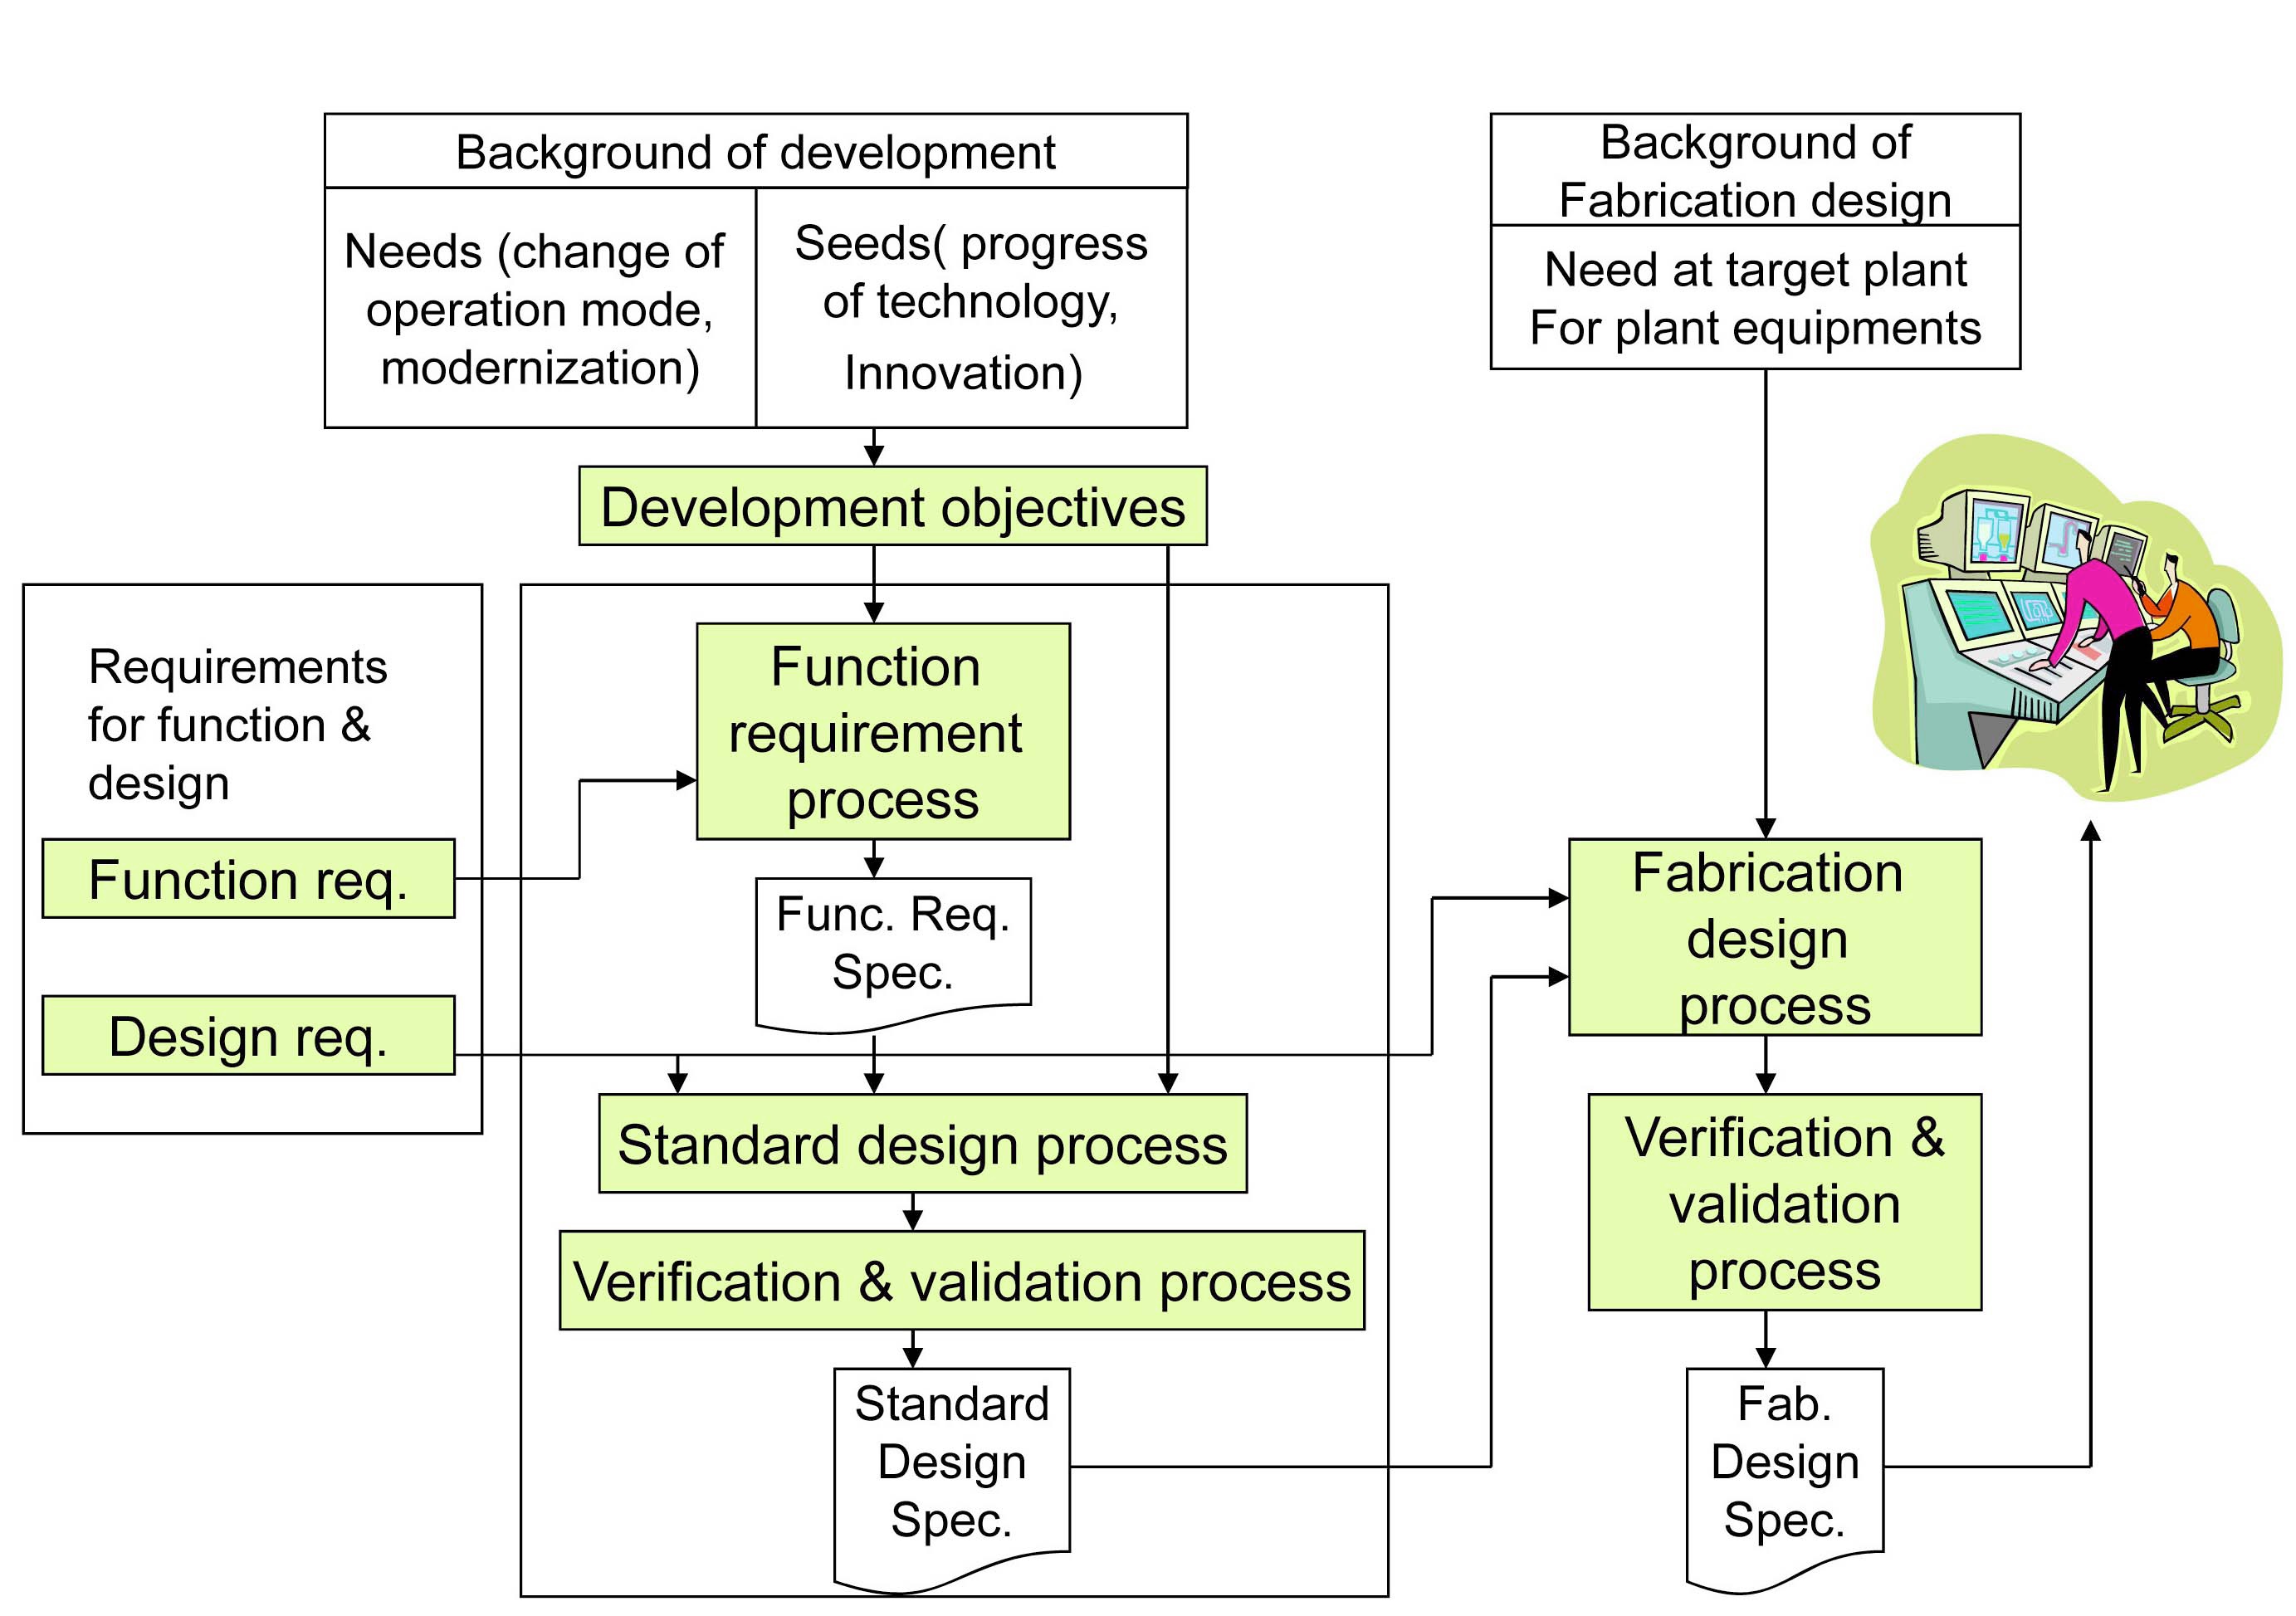 Development Process and Fabrication Design Process of Computerized Human-machine Interface